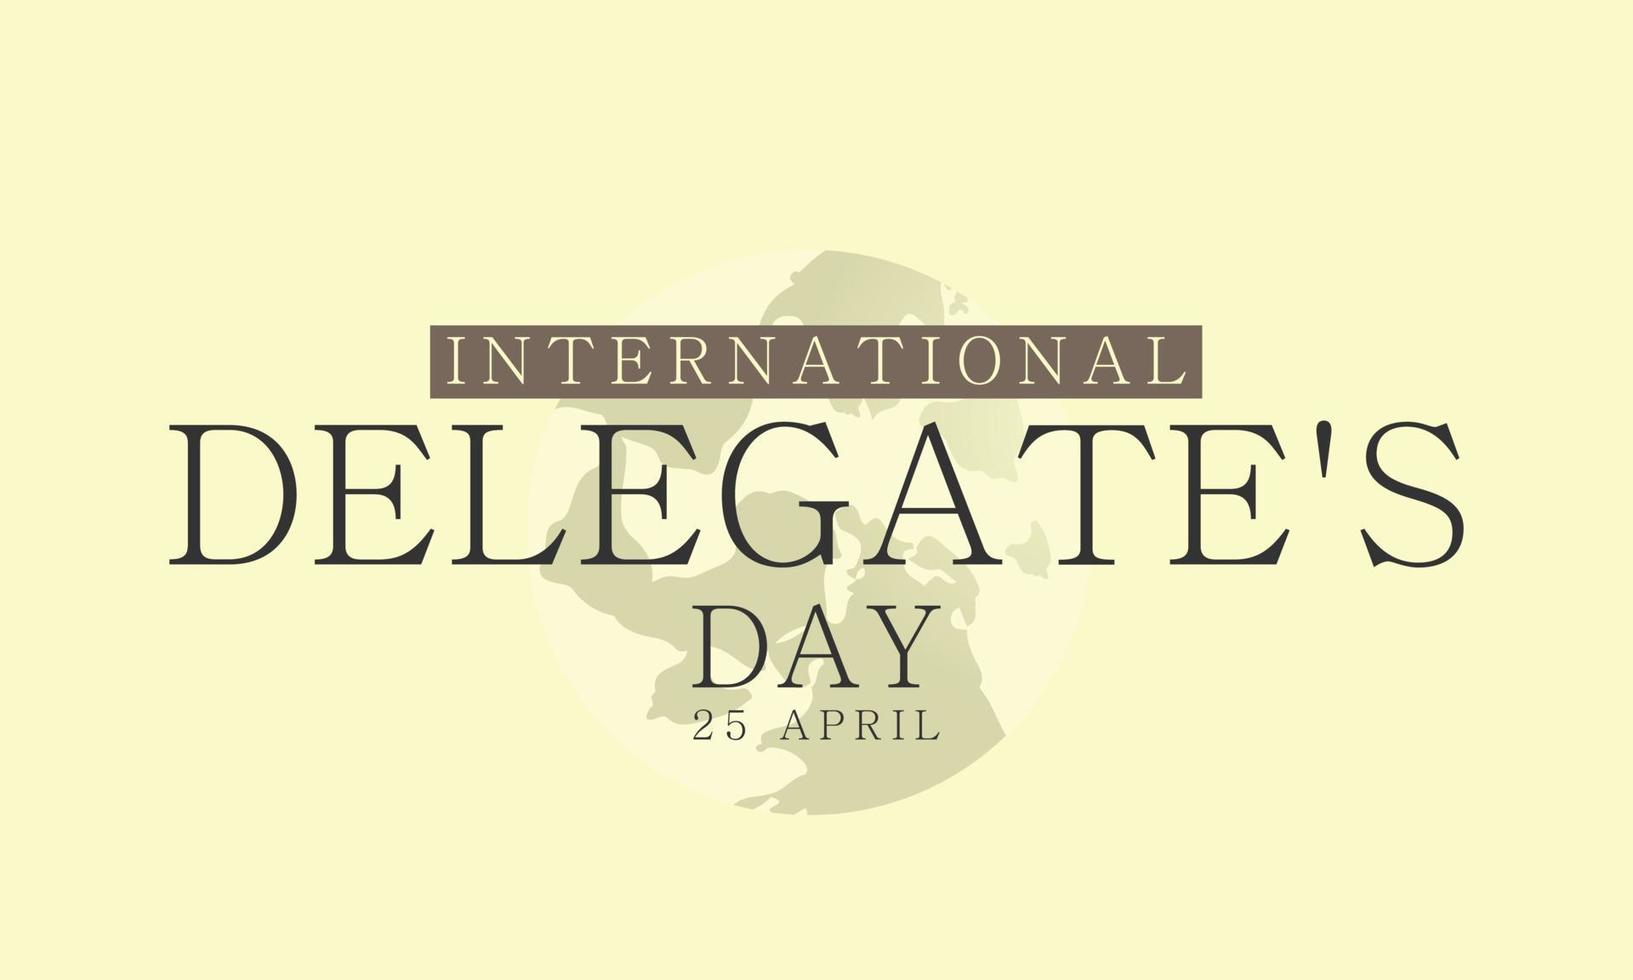 International Delegierter Tag. Vorlage zum Hintergrund, Banner, Karte, Poster vektor